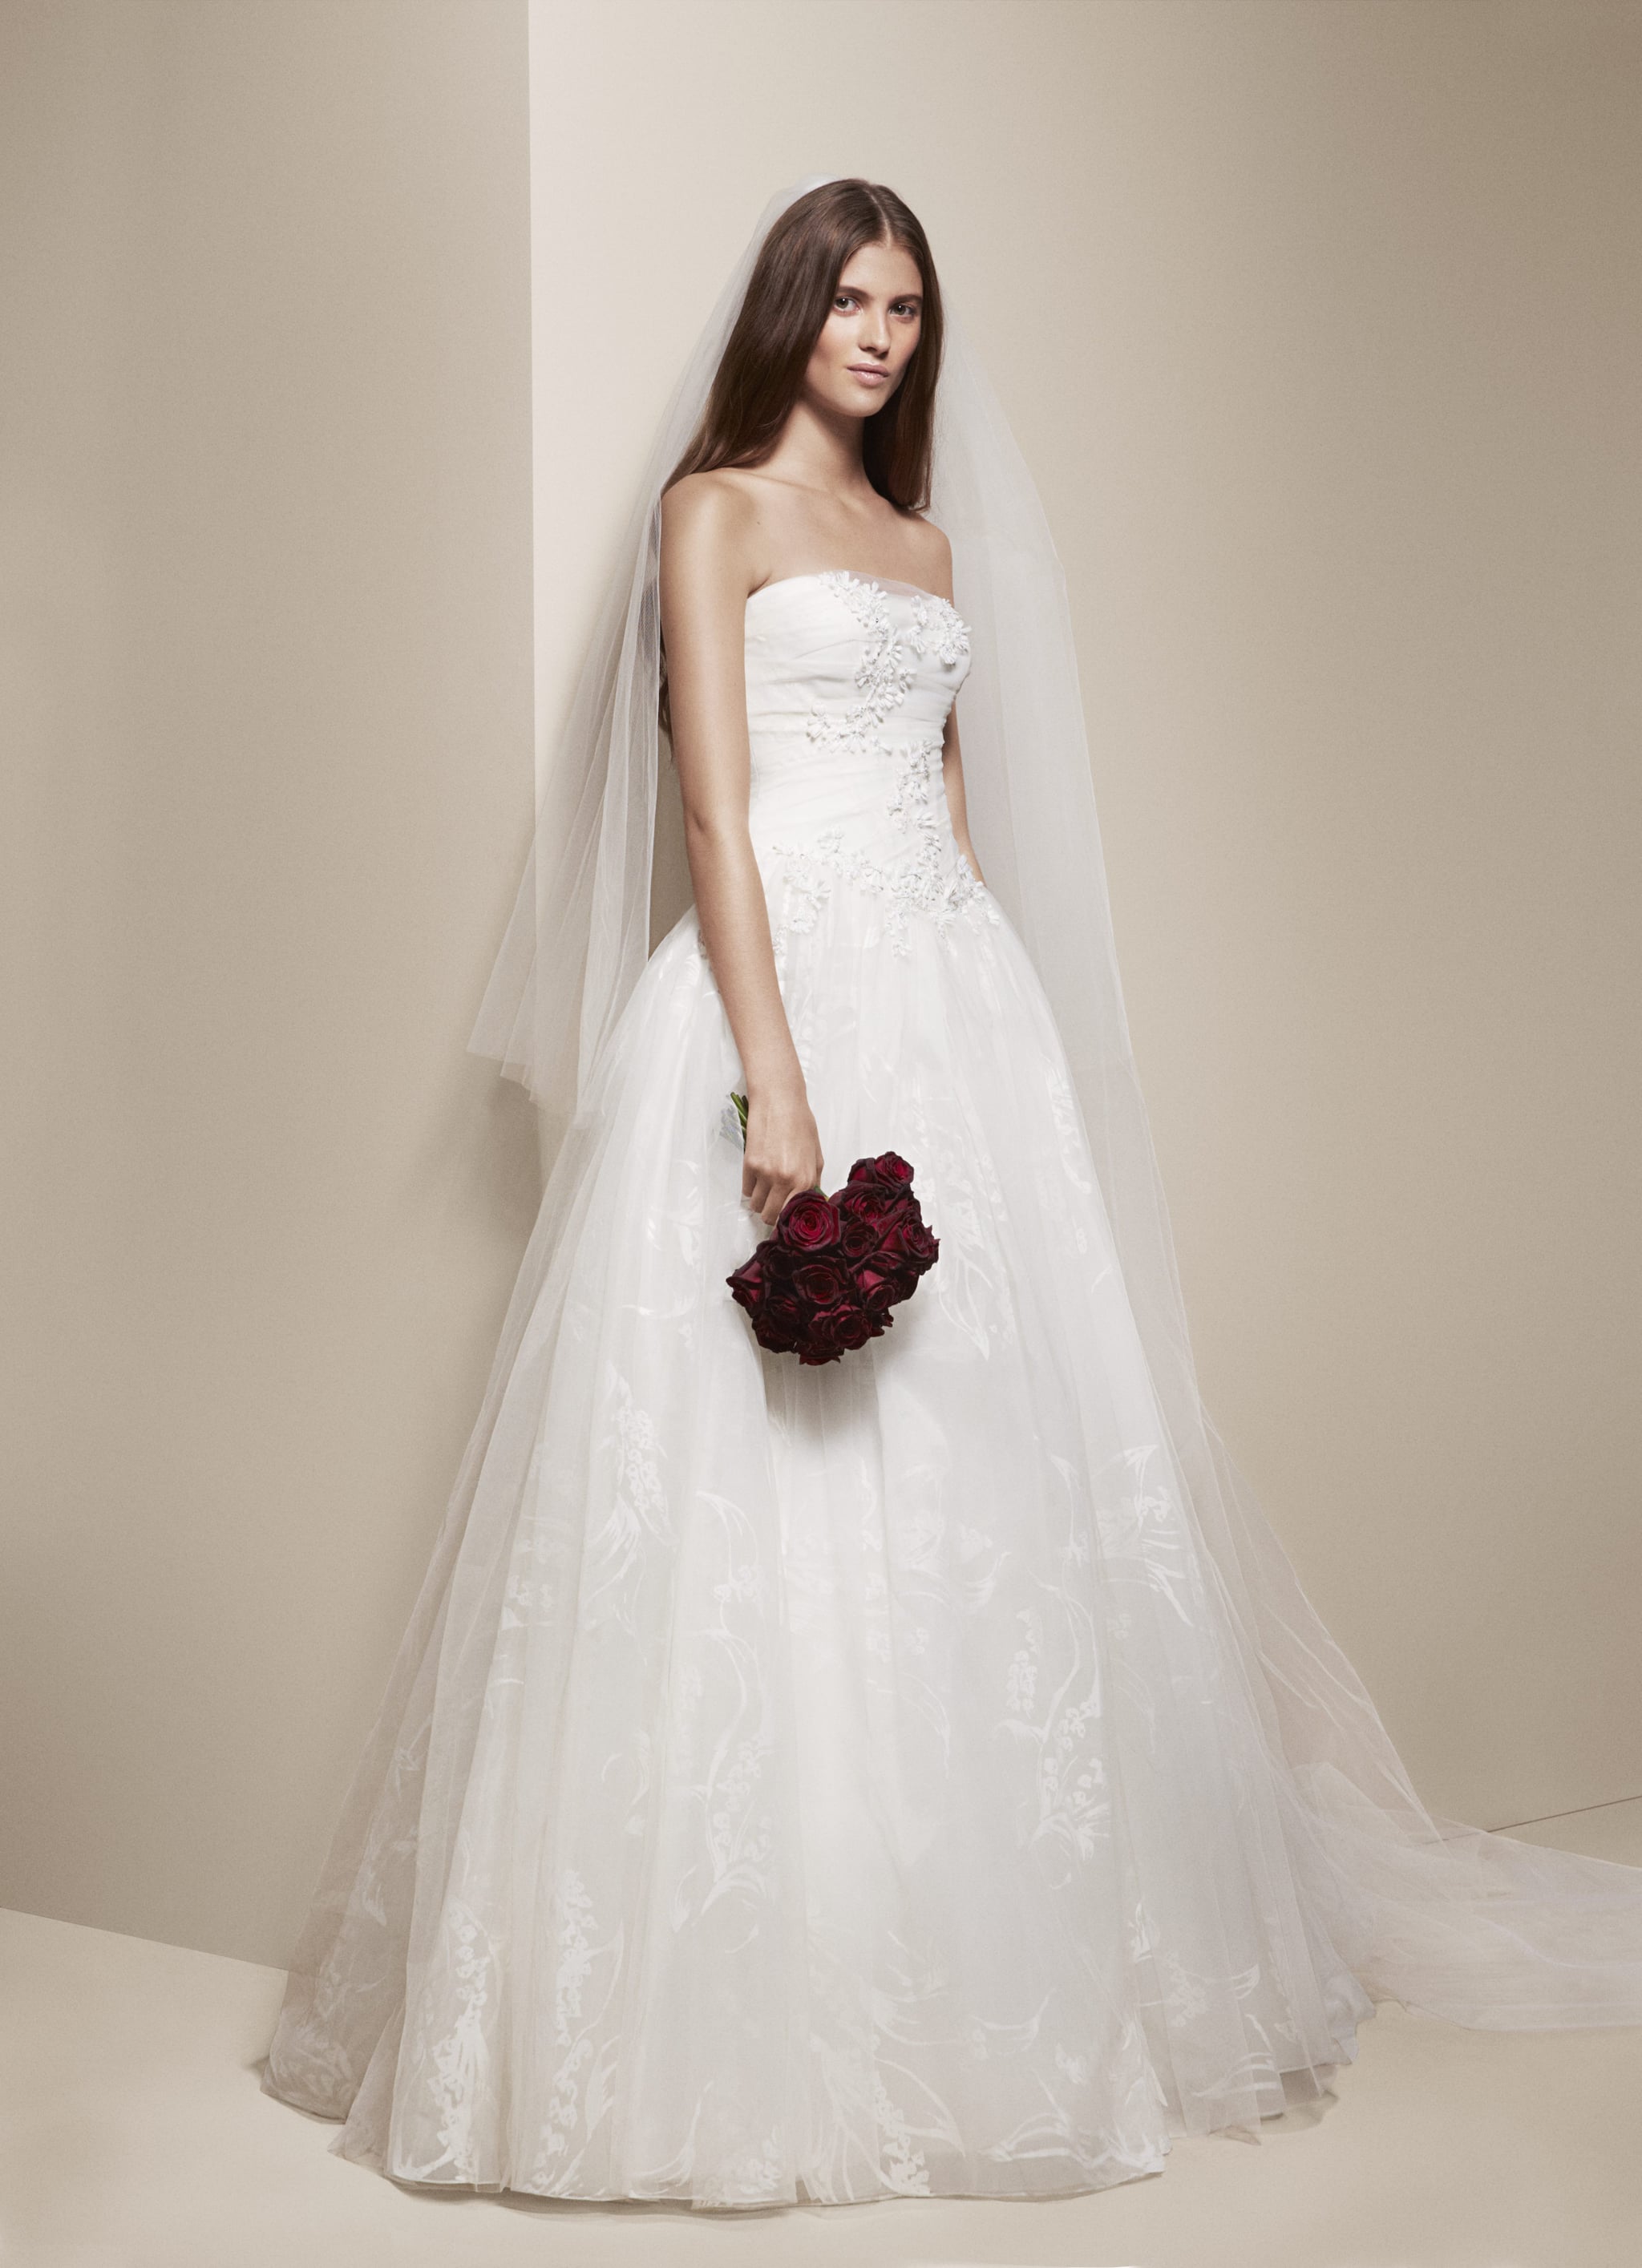 White by Vera Wang Wedding Dresses Spring 2014 | POPSUGAR Fashion